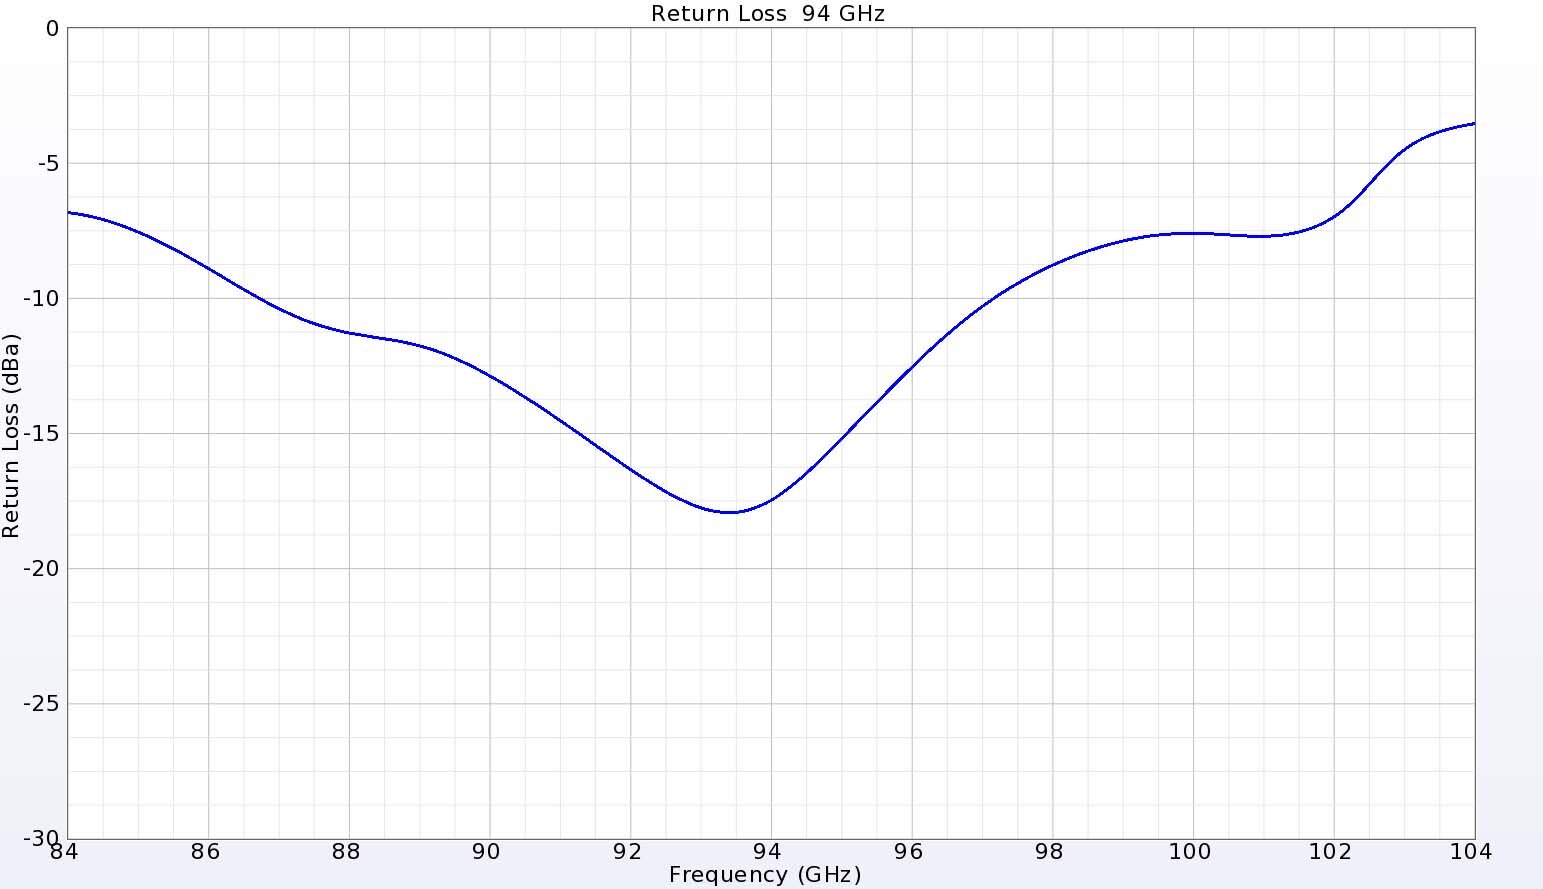 图 4：94 千兆赫端口的回波损耗显示出良好的匹配性，数值低于 -15 dB。